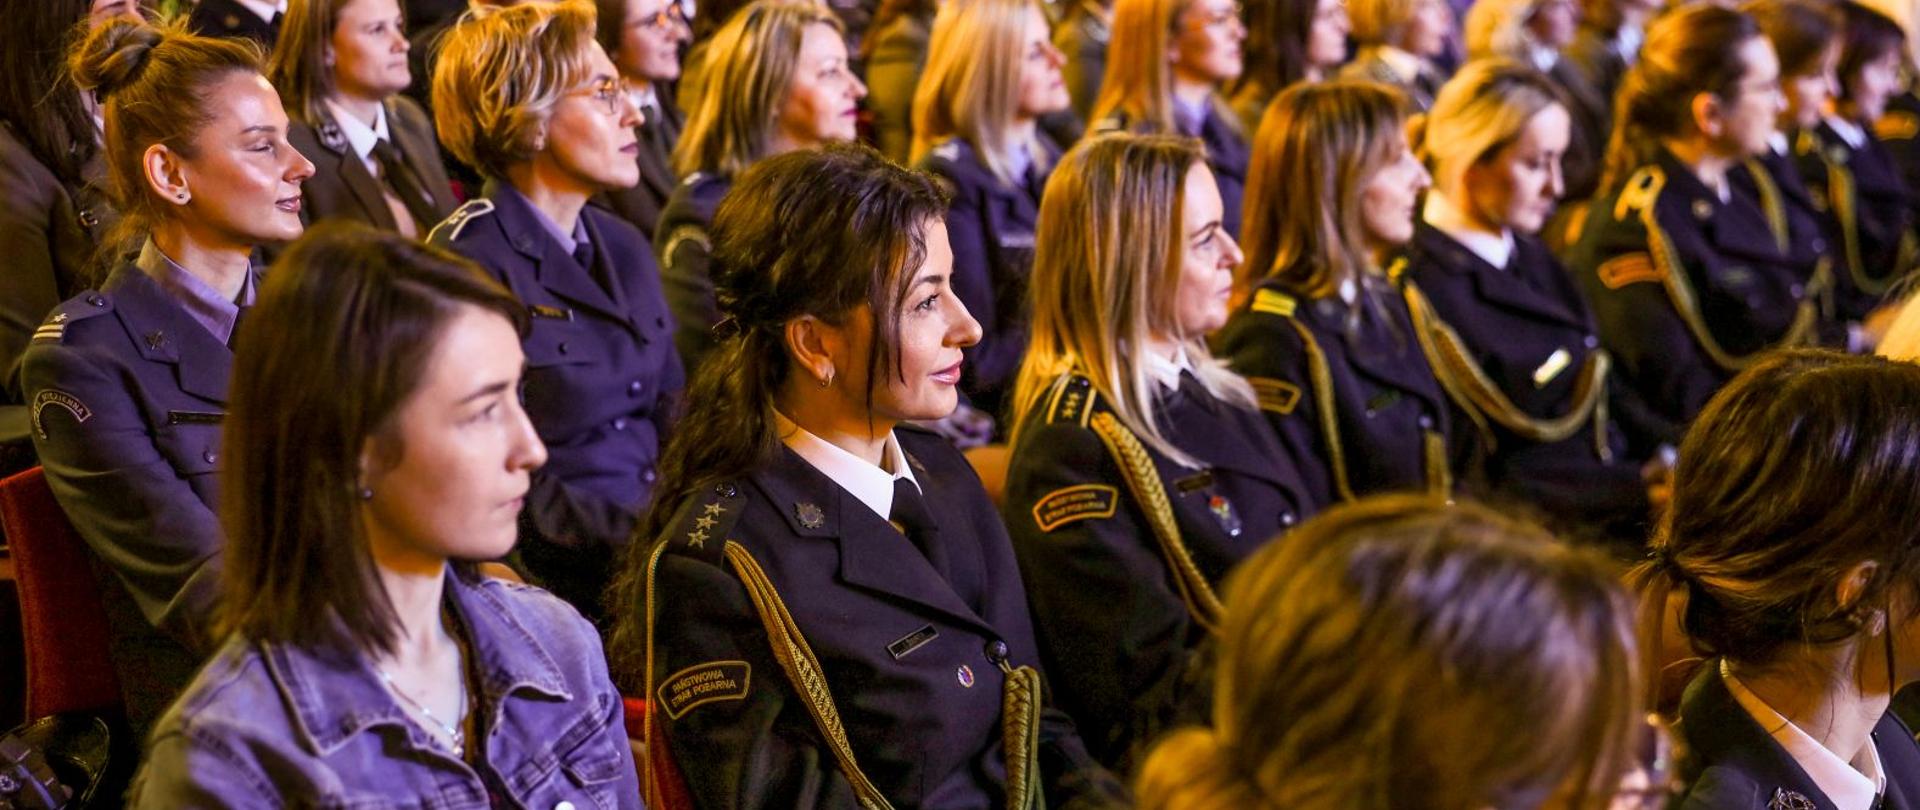 Na zdjęciu widzimy kobiety w mundurach różnych formacji siedzące na widowni. Na pierwszym planie kobieta w stopniu kapitana Państwowej Straży Pożarnej.